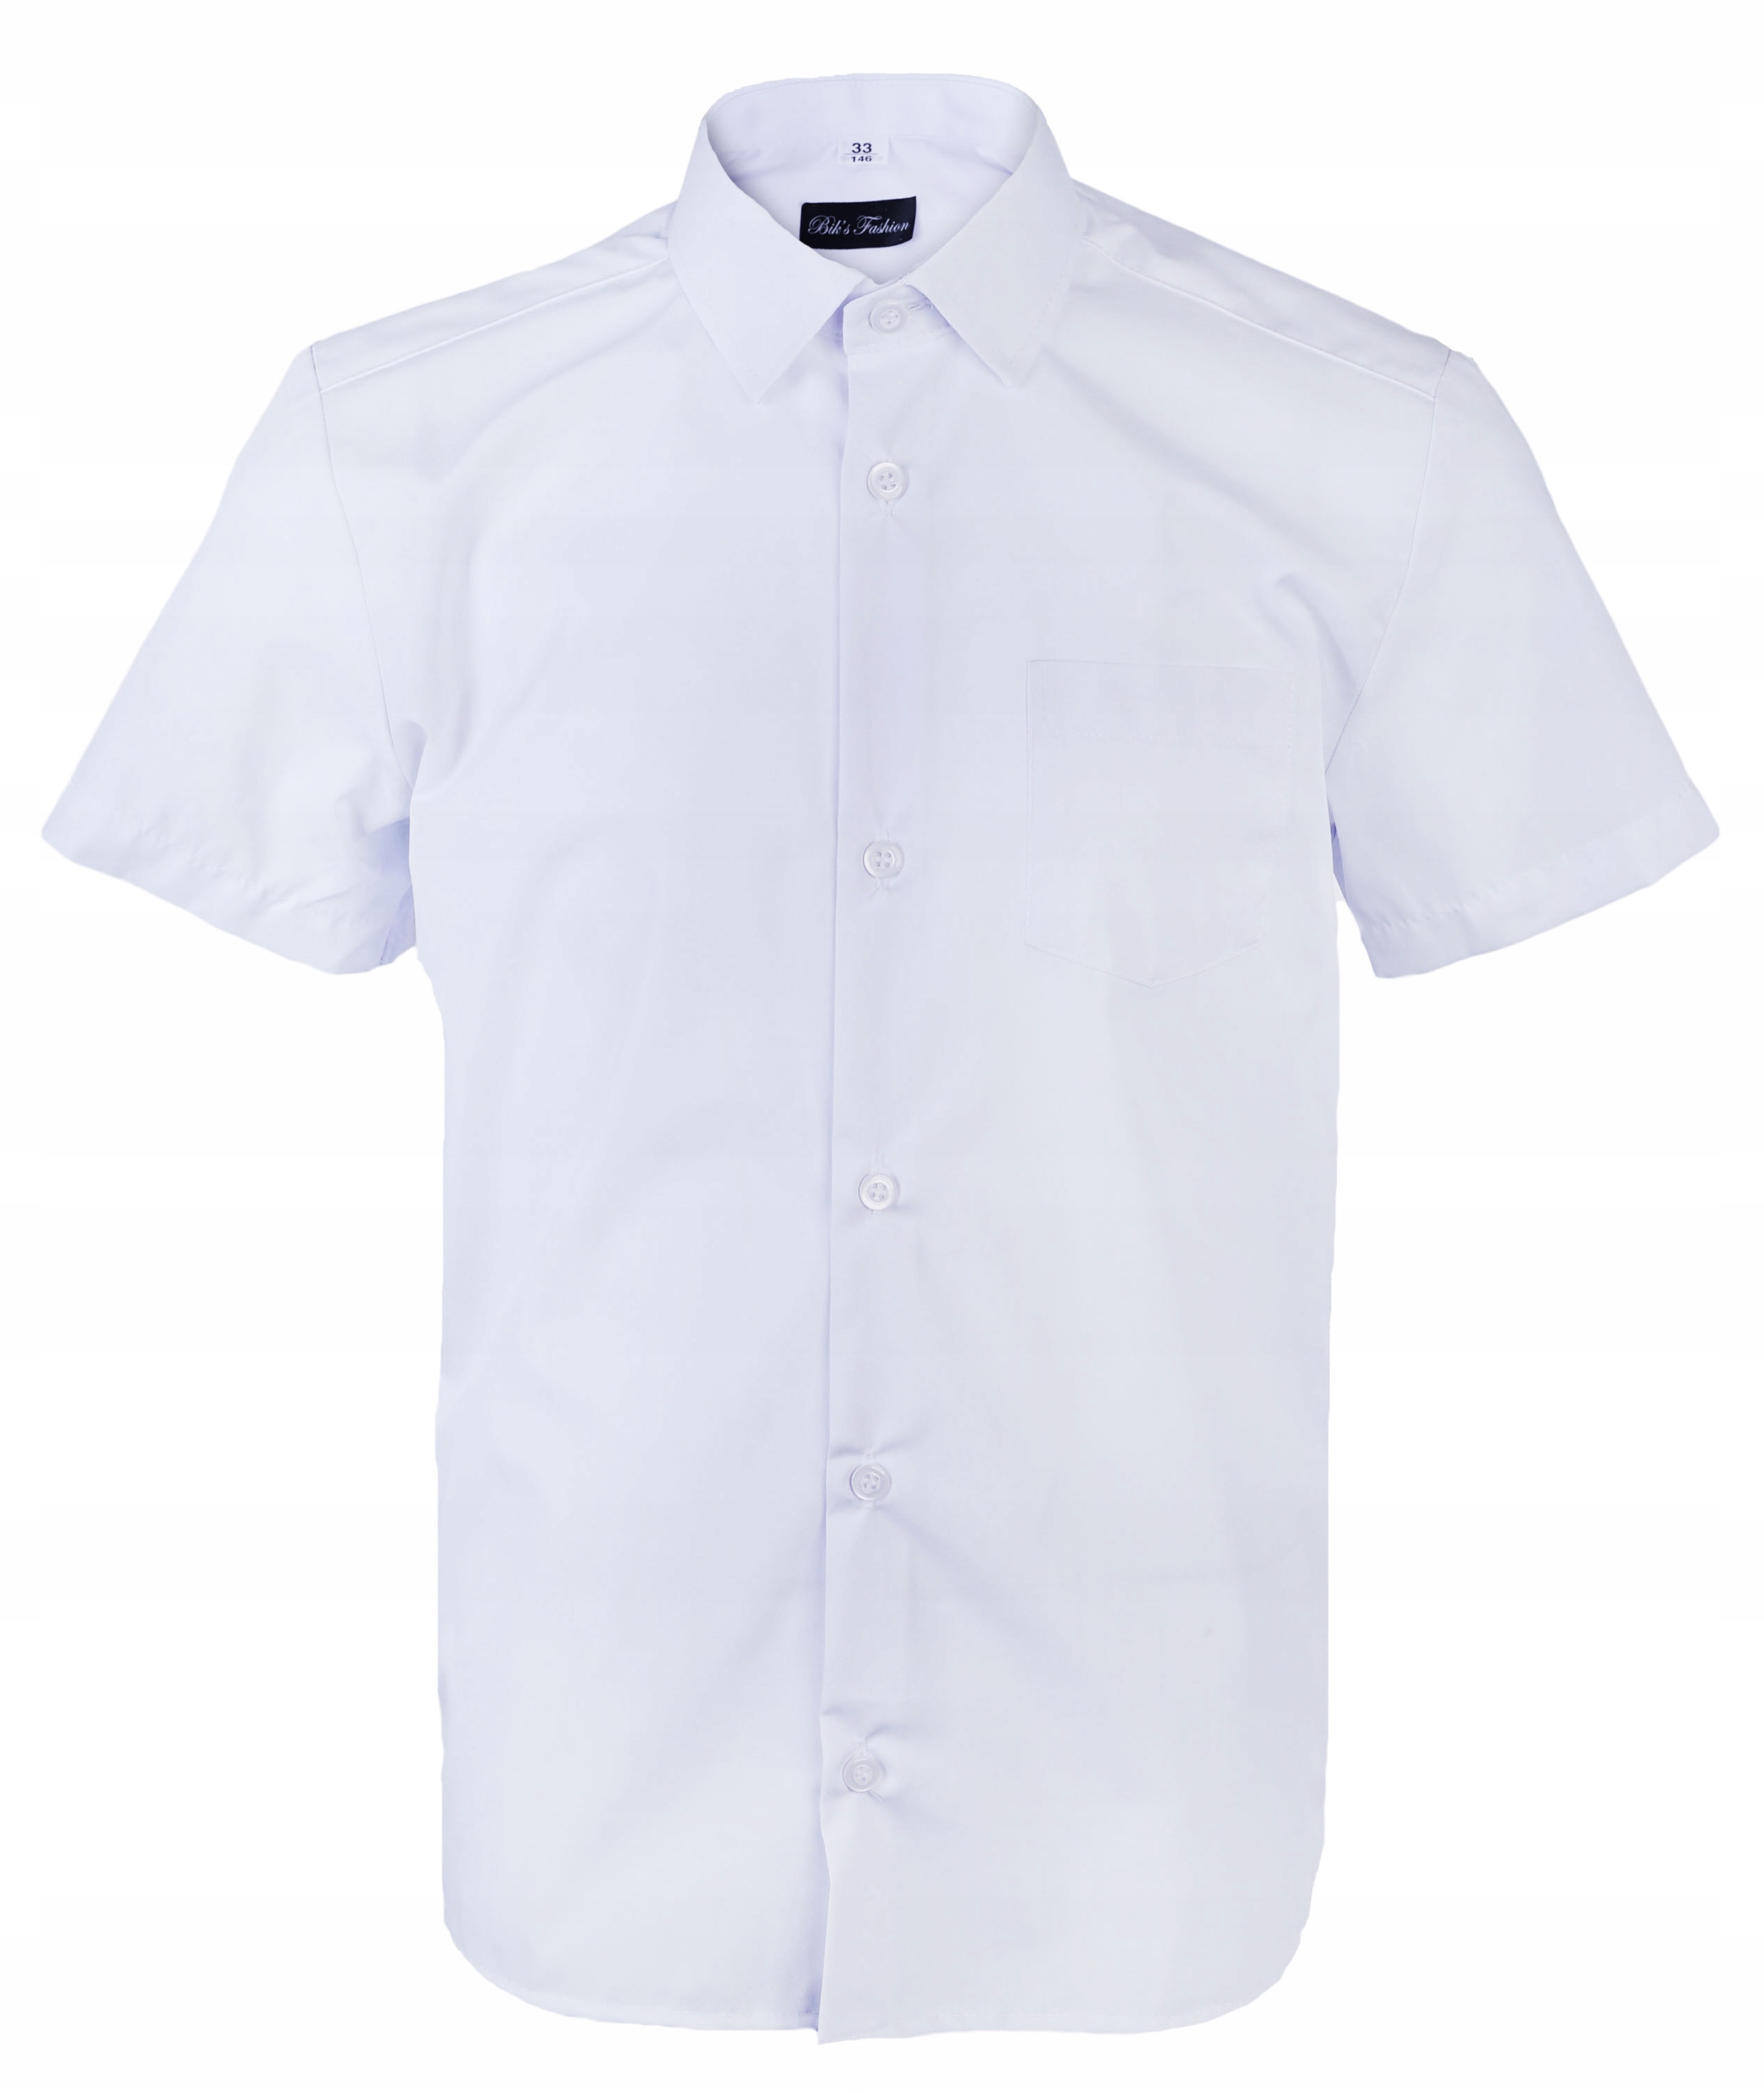 Chłopięca koszula elegancka na komunie krótki rękaw cała biała BIKS 134